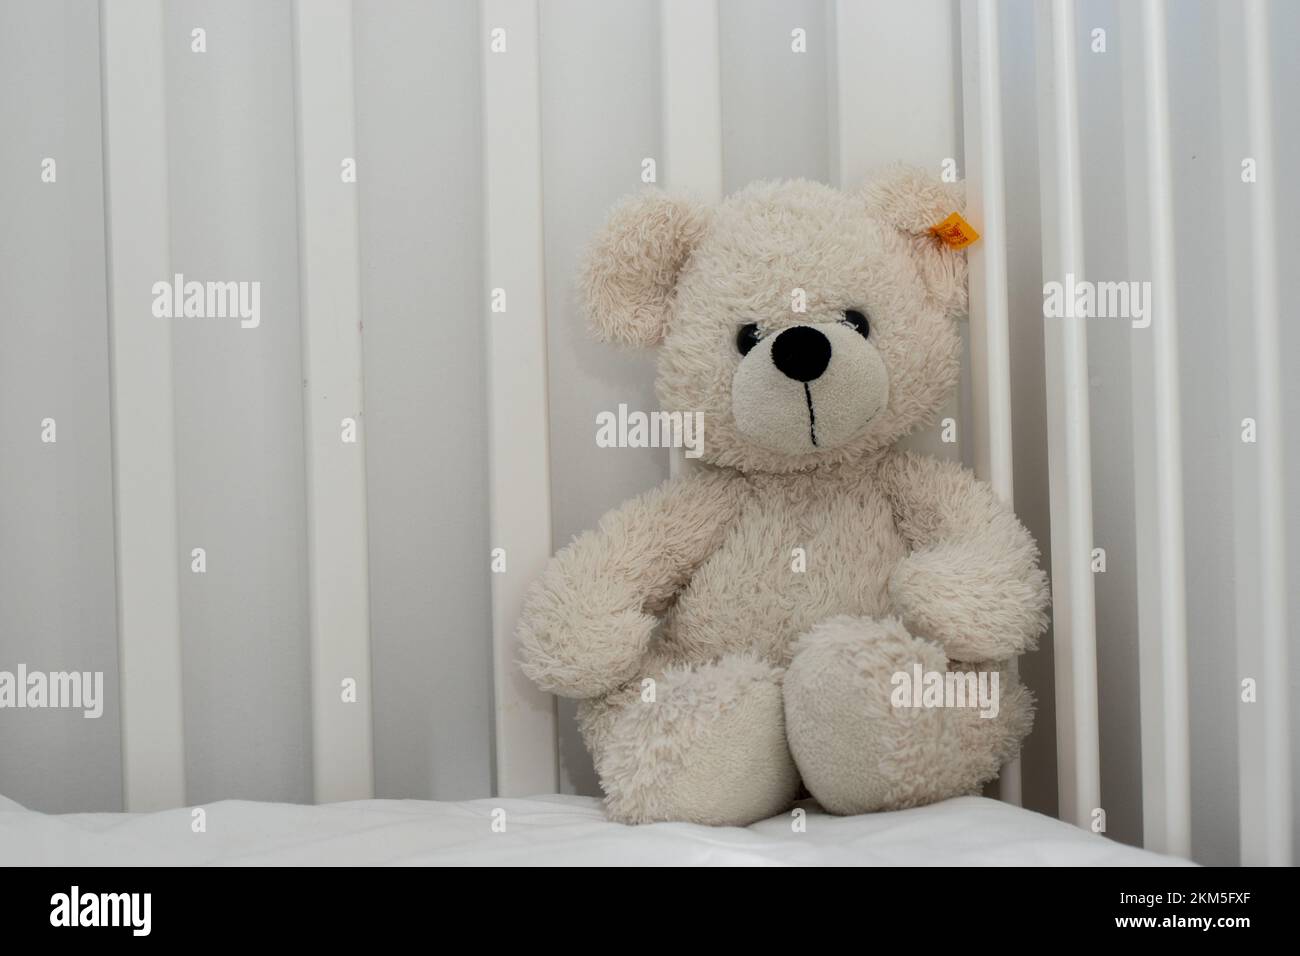 Osito de peluche blanco oso polar peluche abrigado juguete en cuna bebé cama de niño monocromo colores neutros blanco y negro Foto de stock